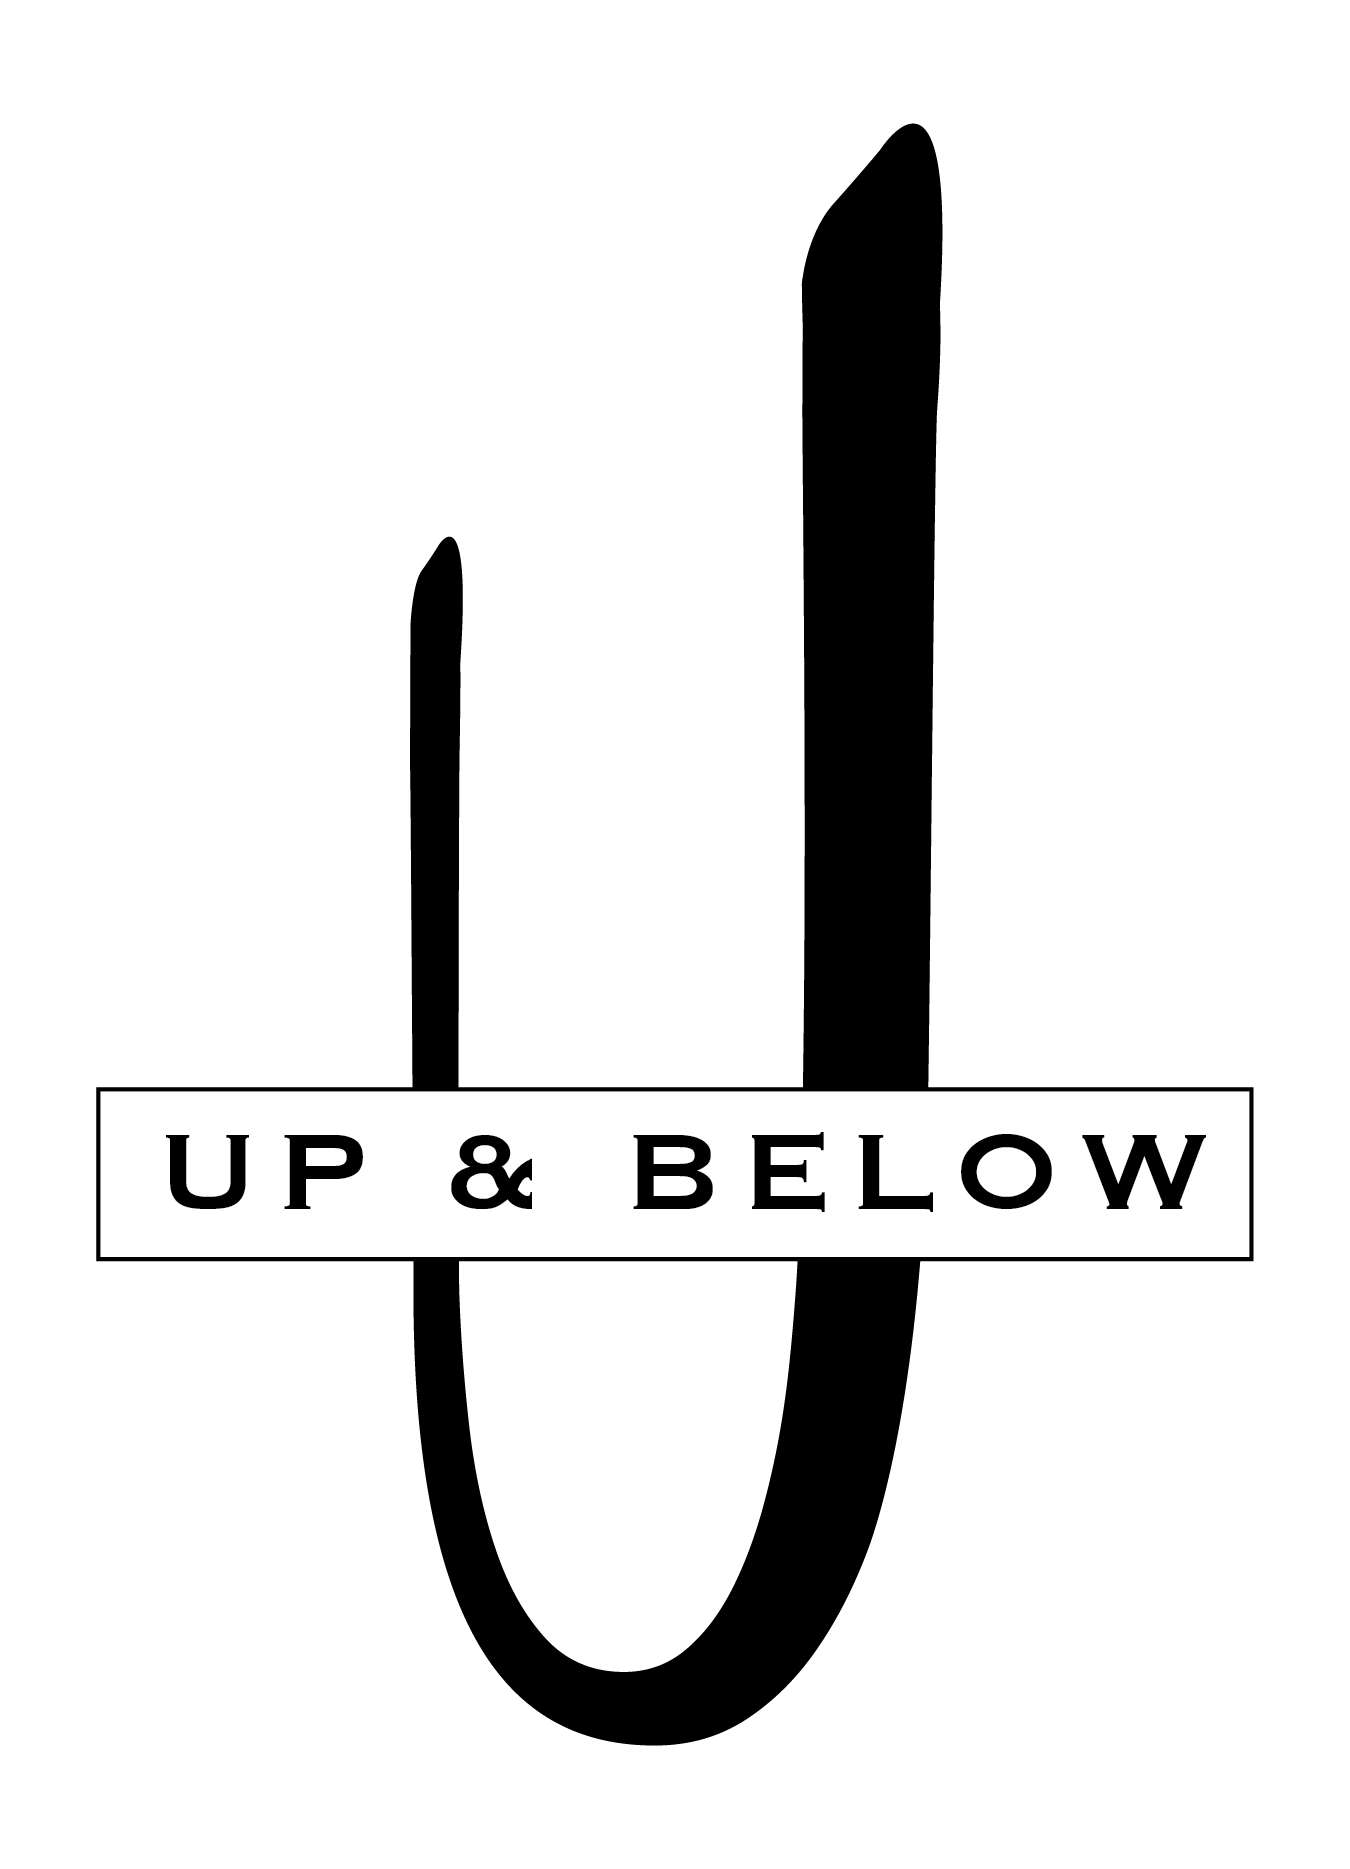 Up & Below